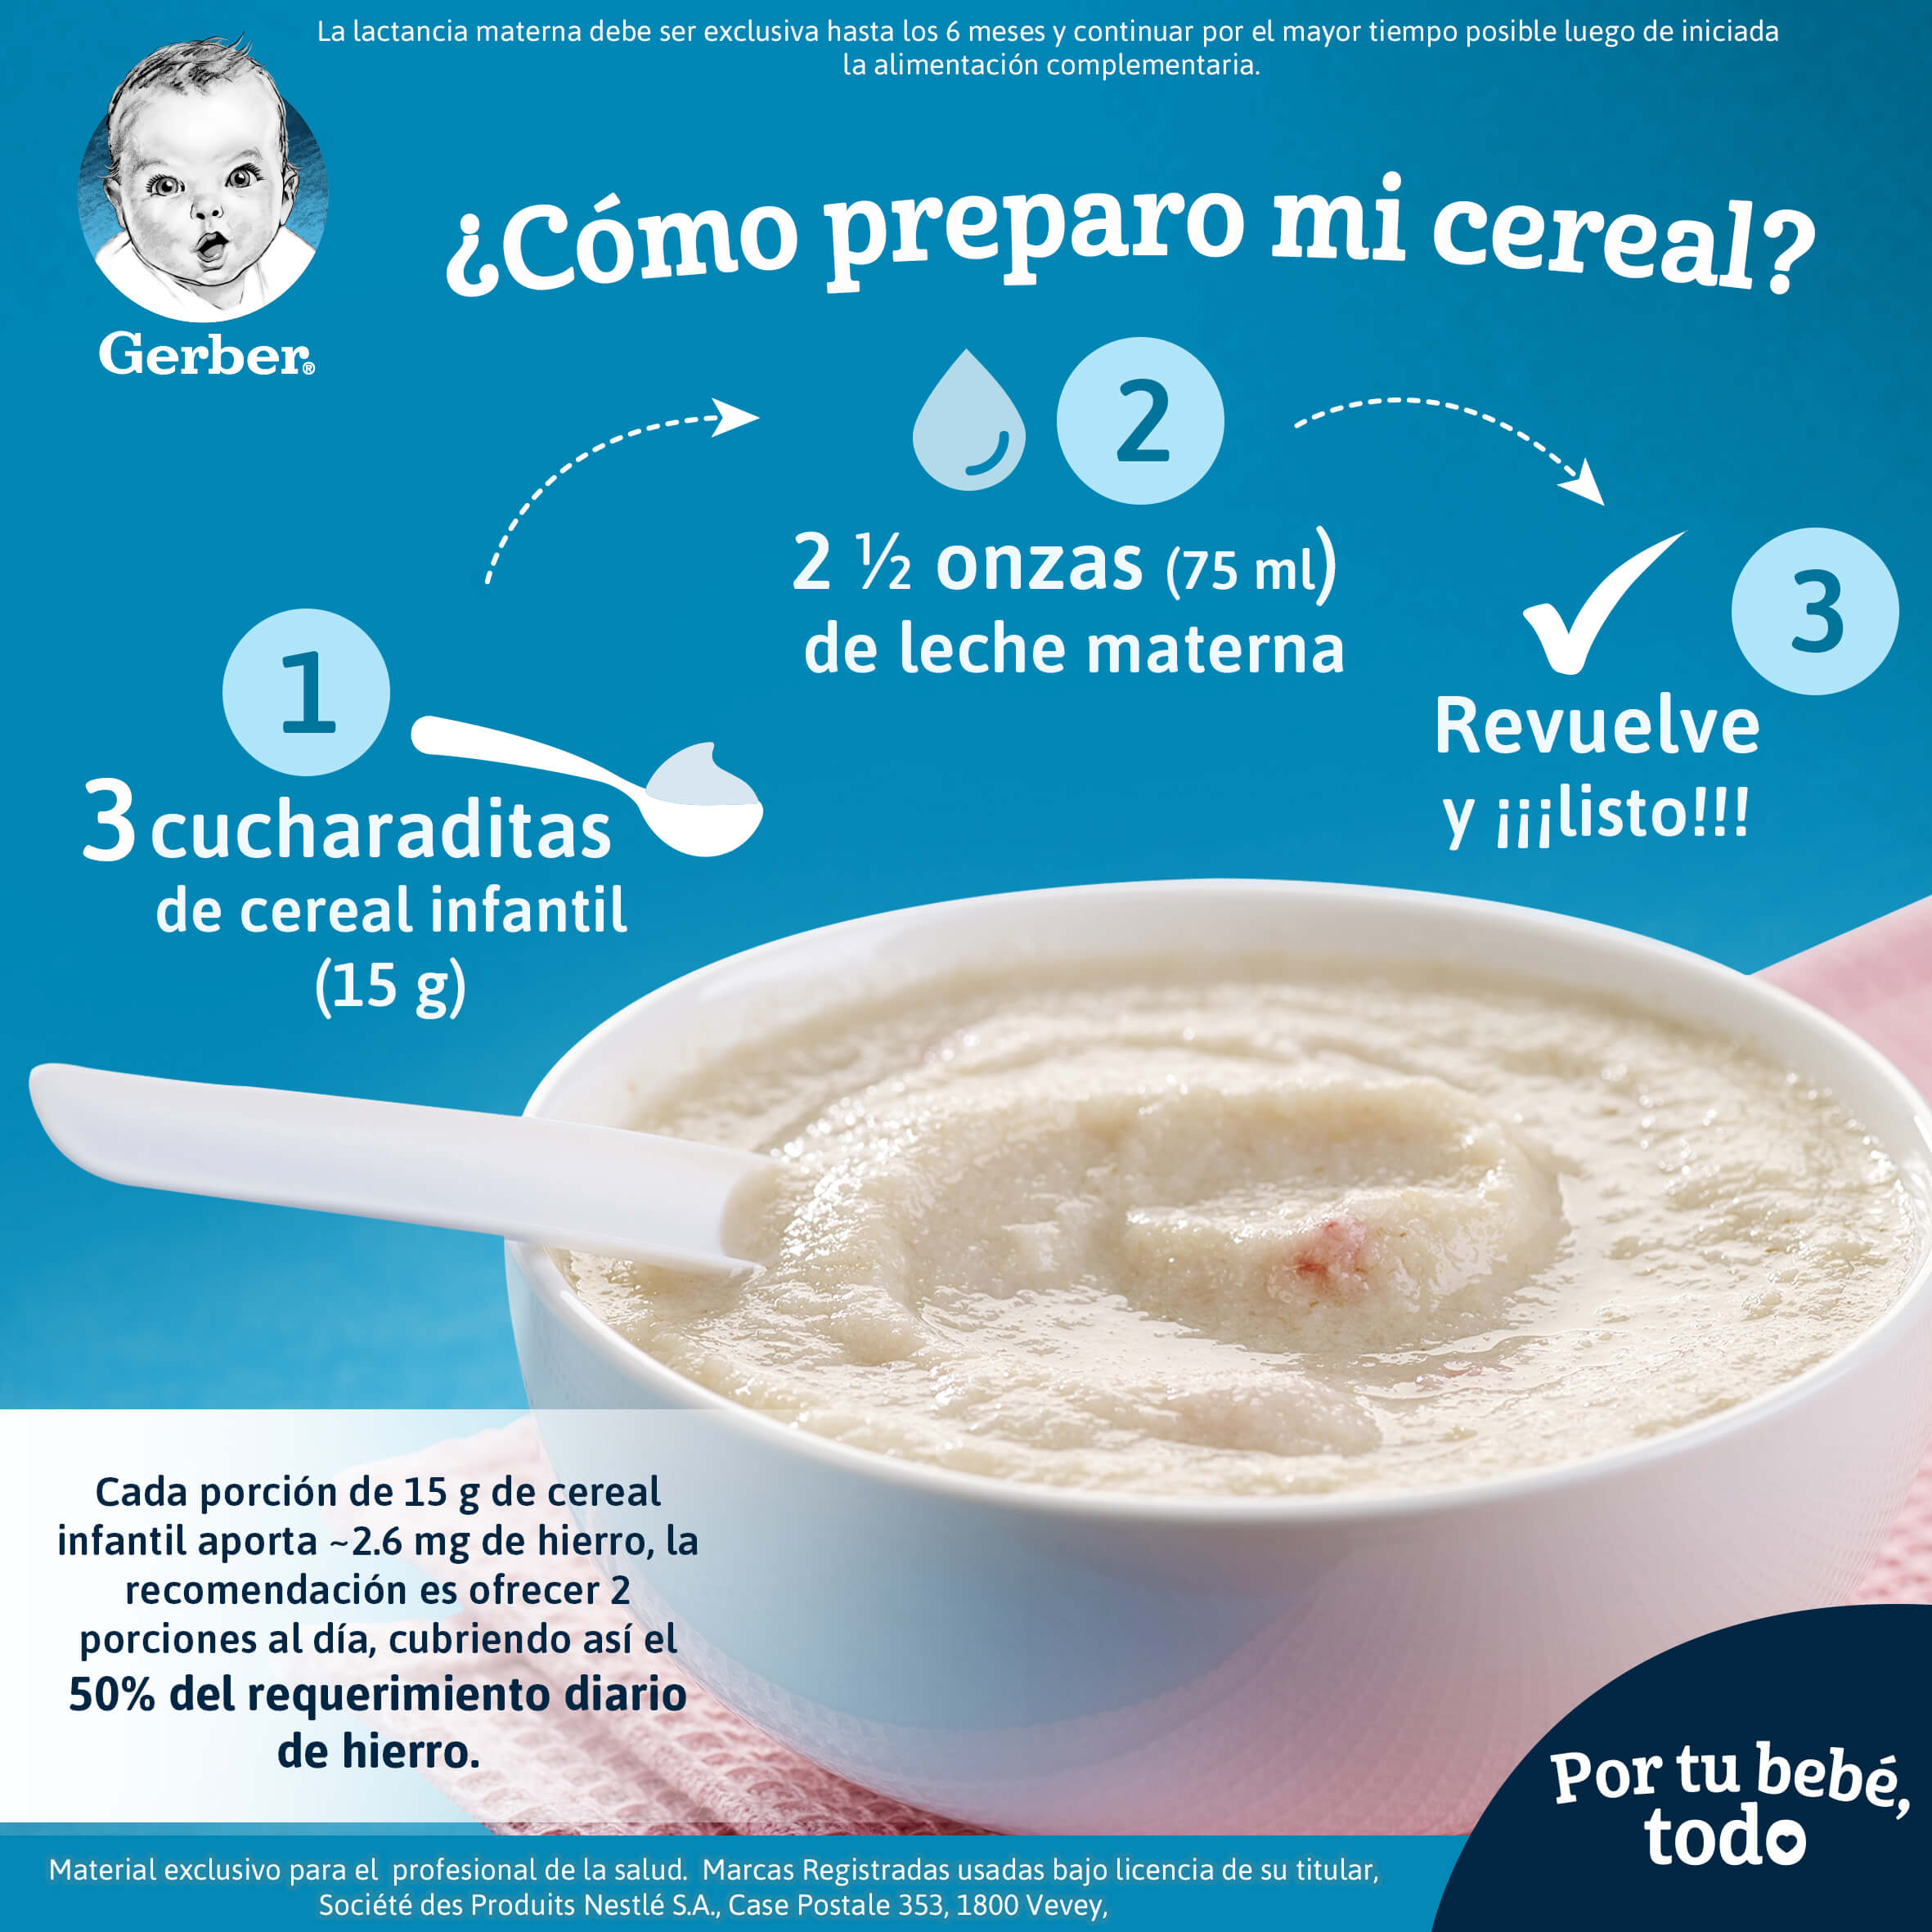 Cómo preparo mi cereal Gerber, cada 15g de cereal infantil aporta - 2.6 mg de hierro 